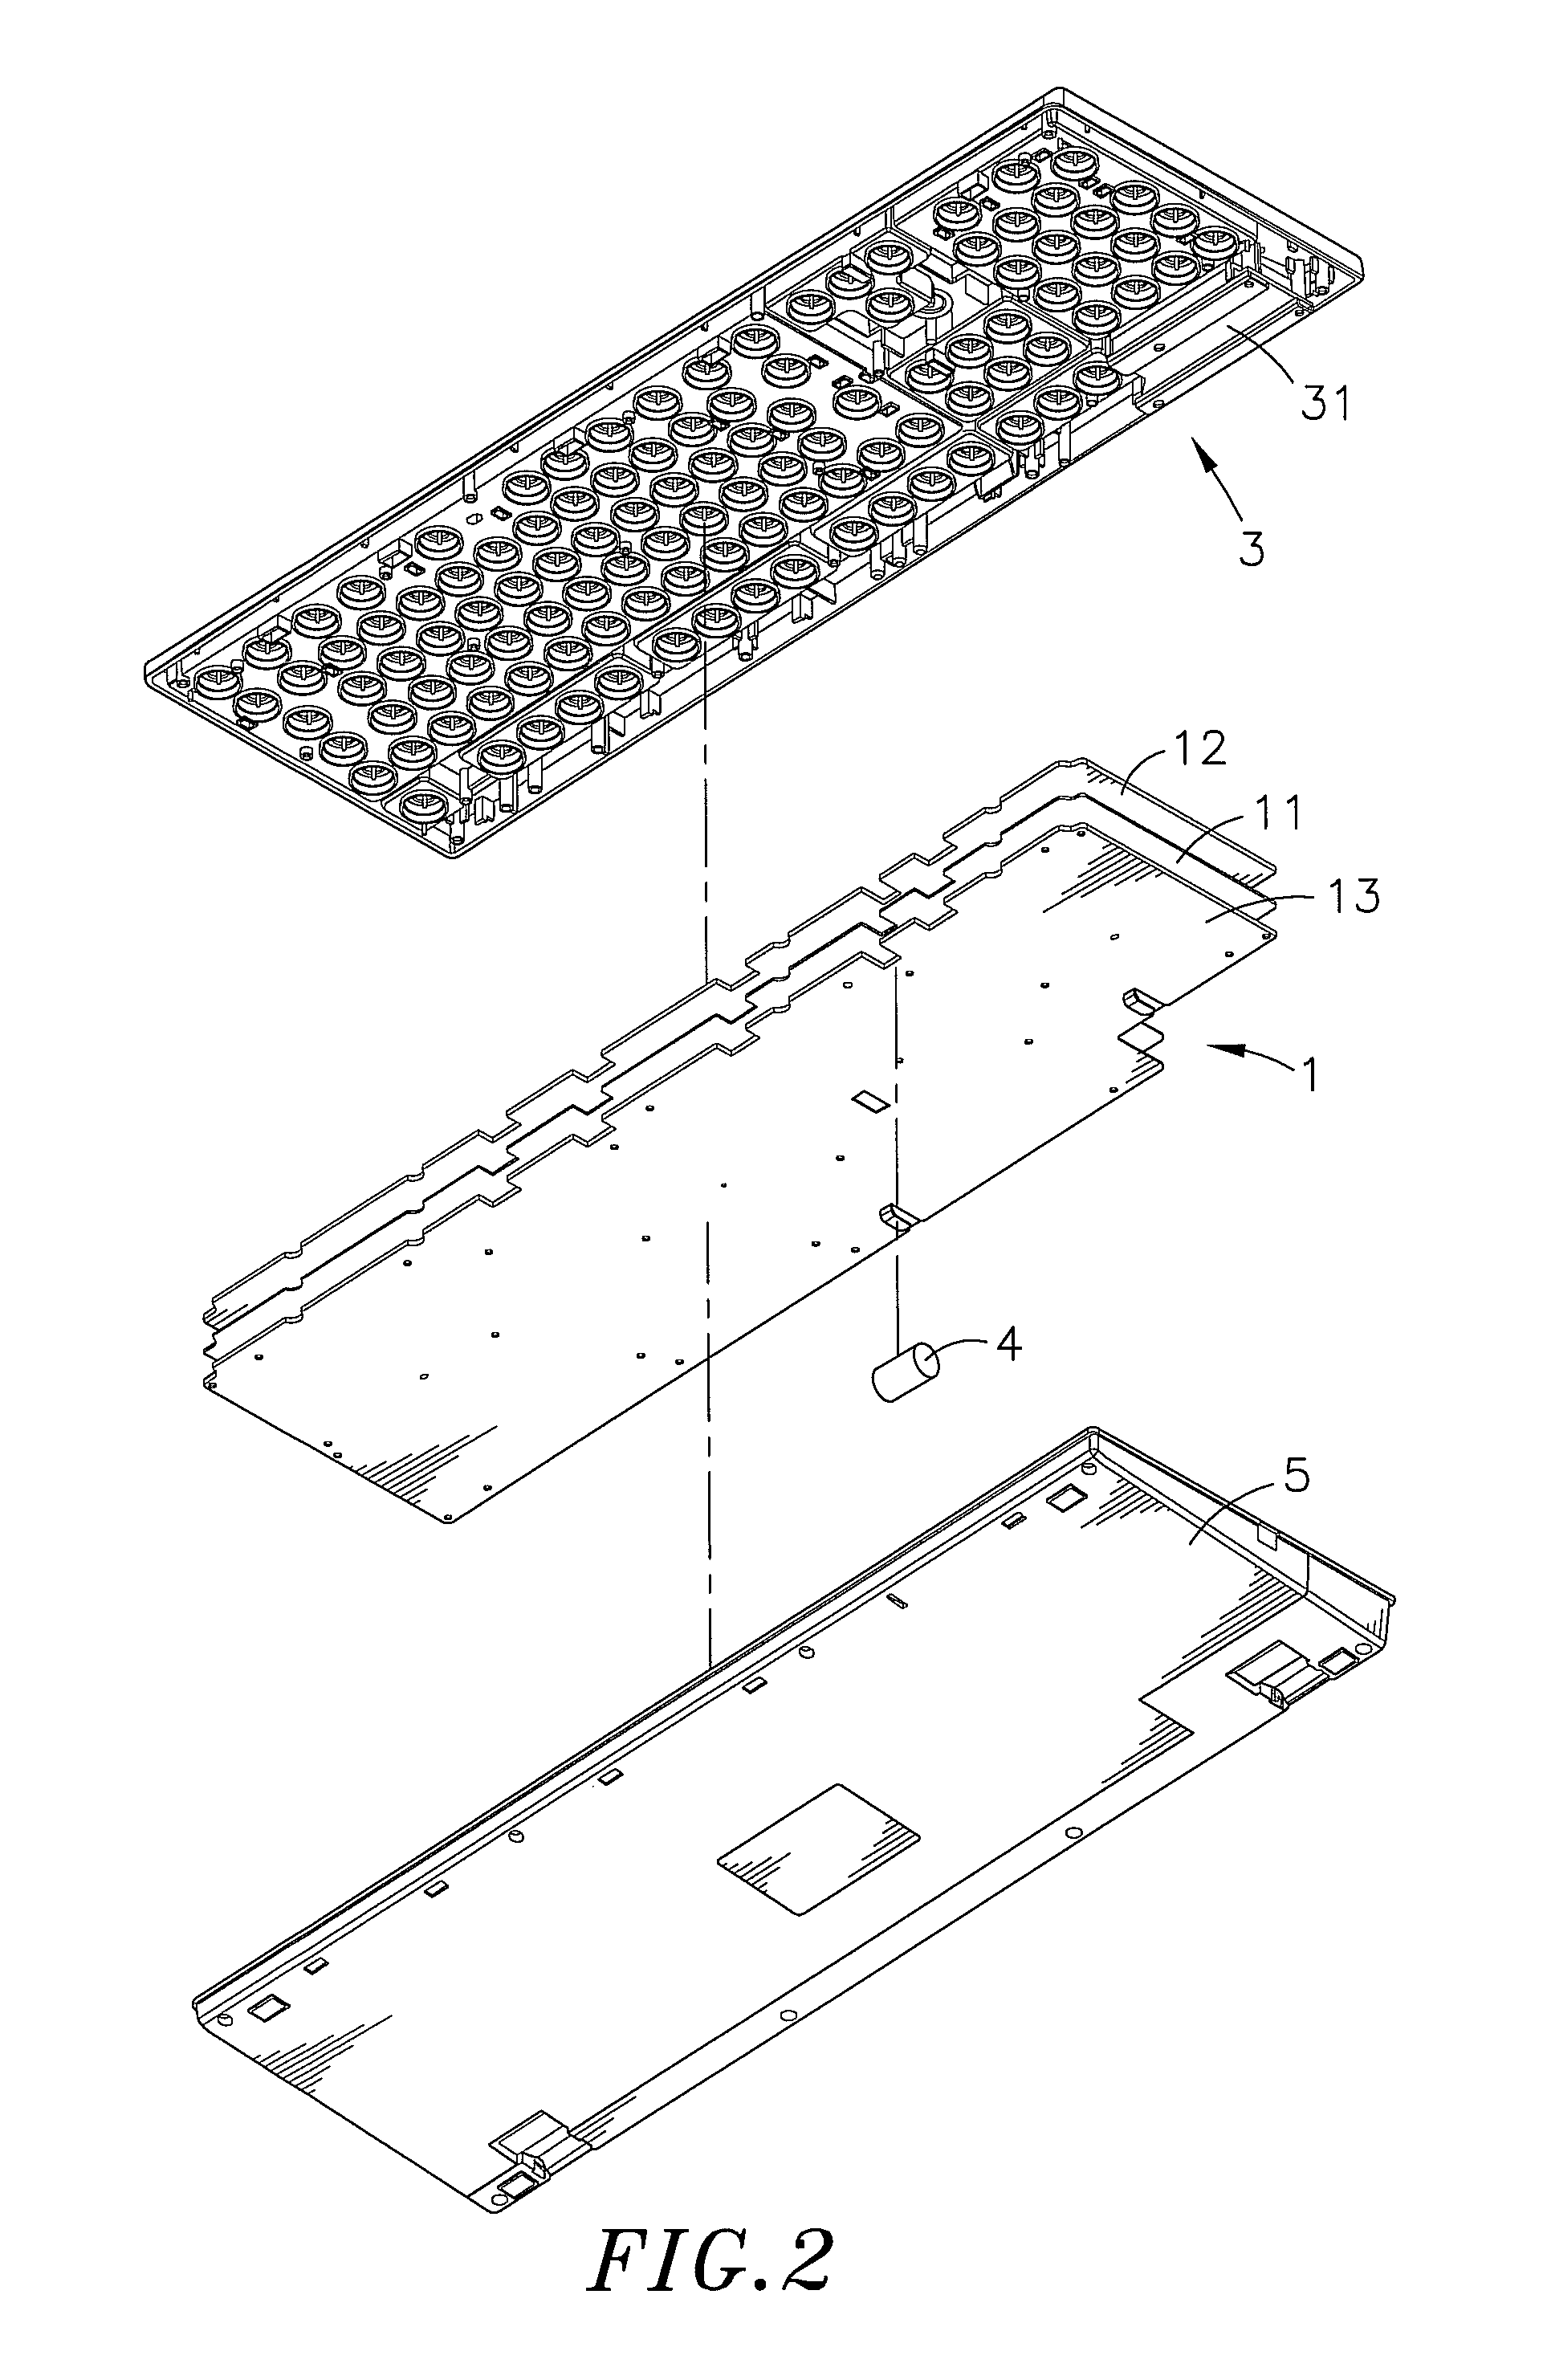 Body sensing computer keyboard